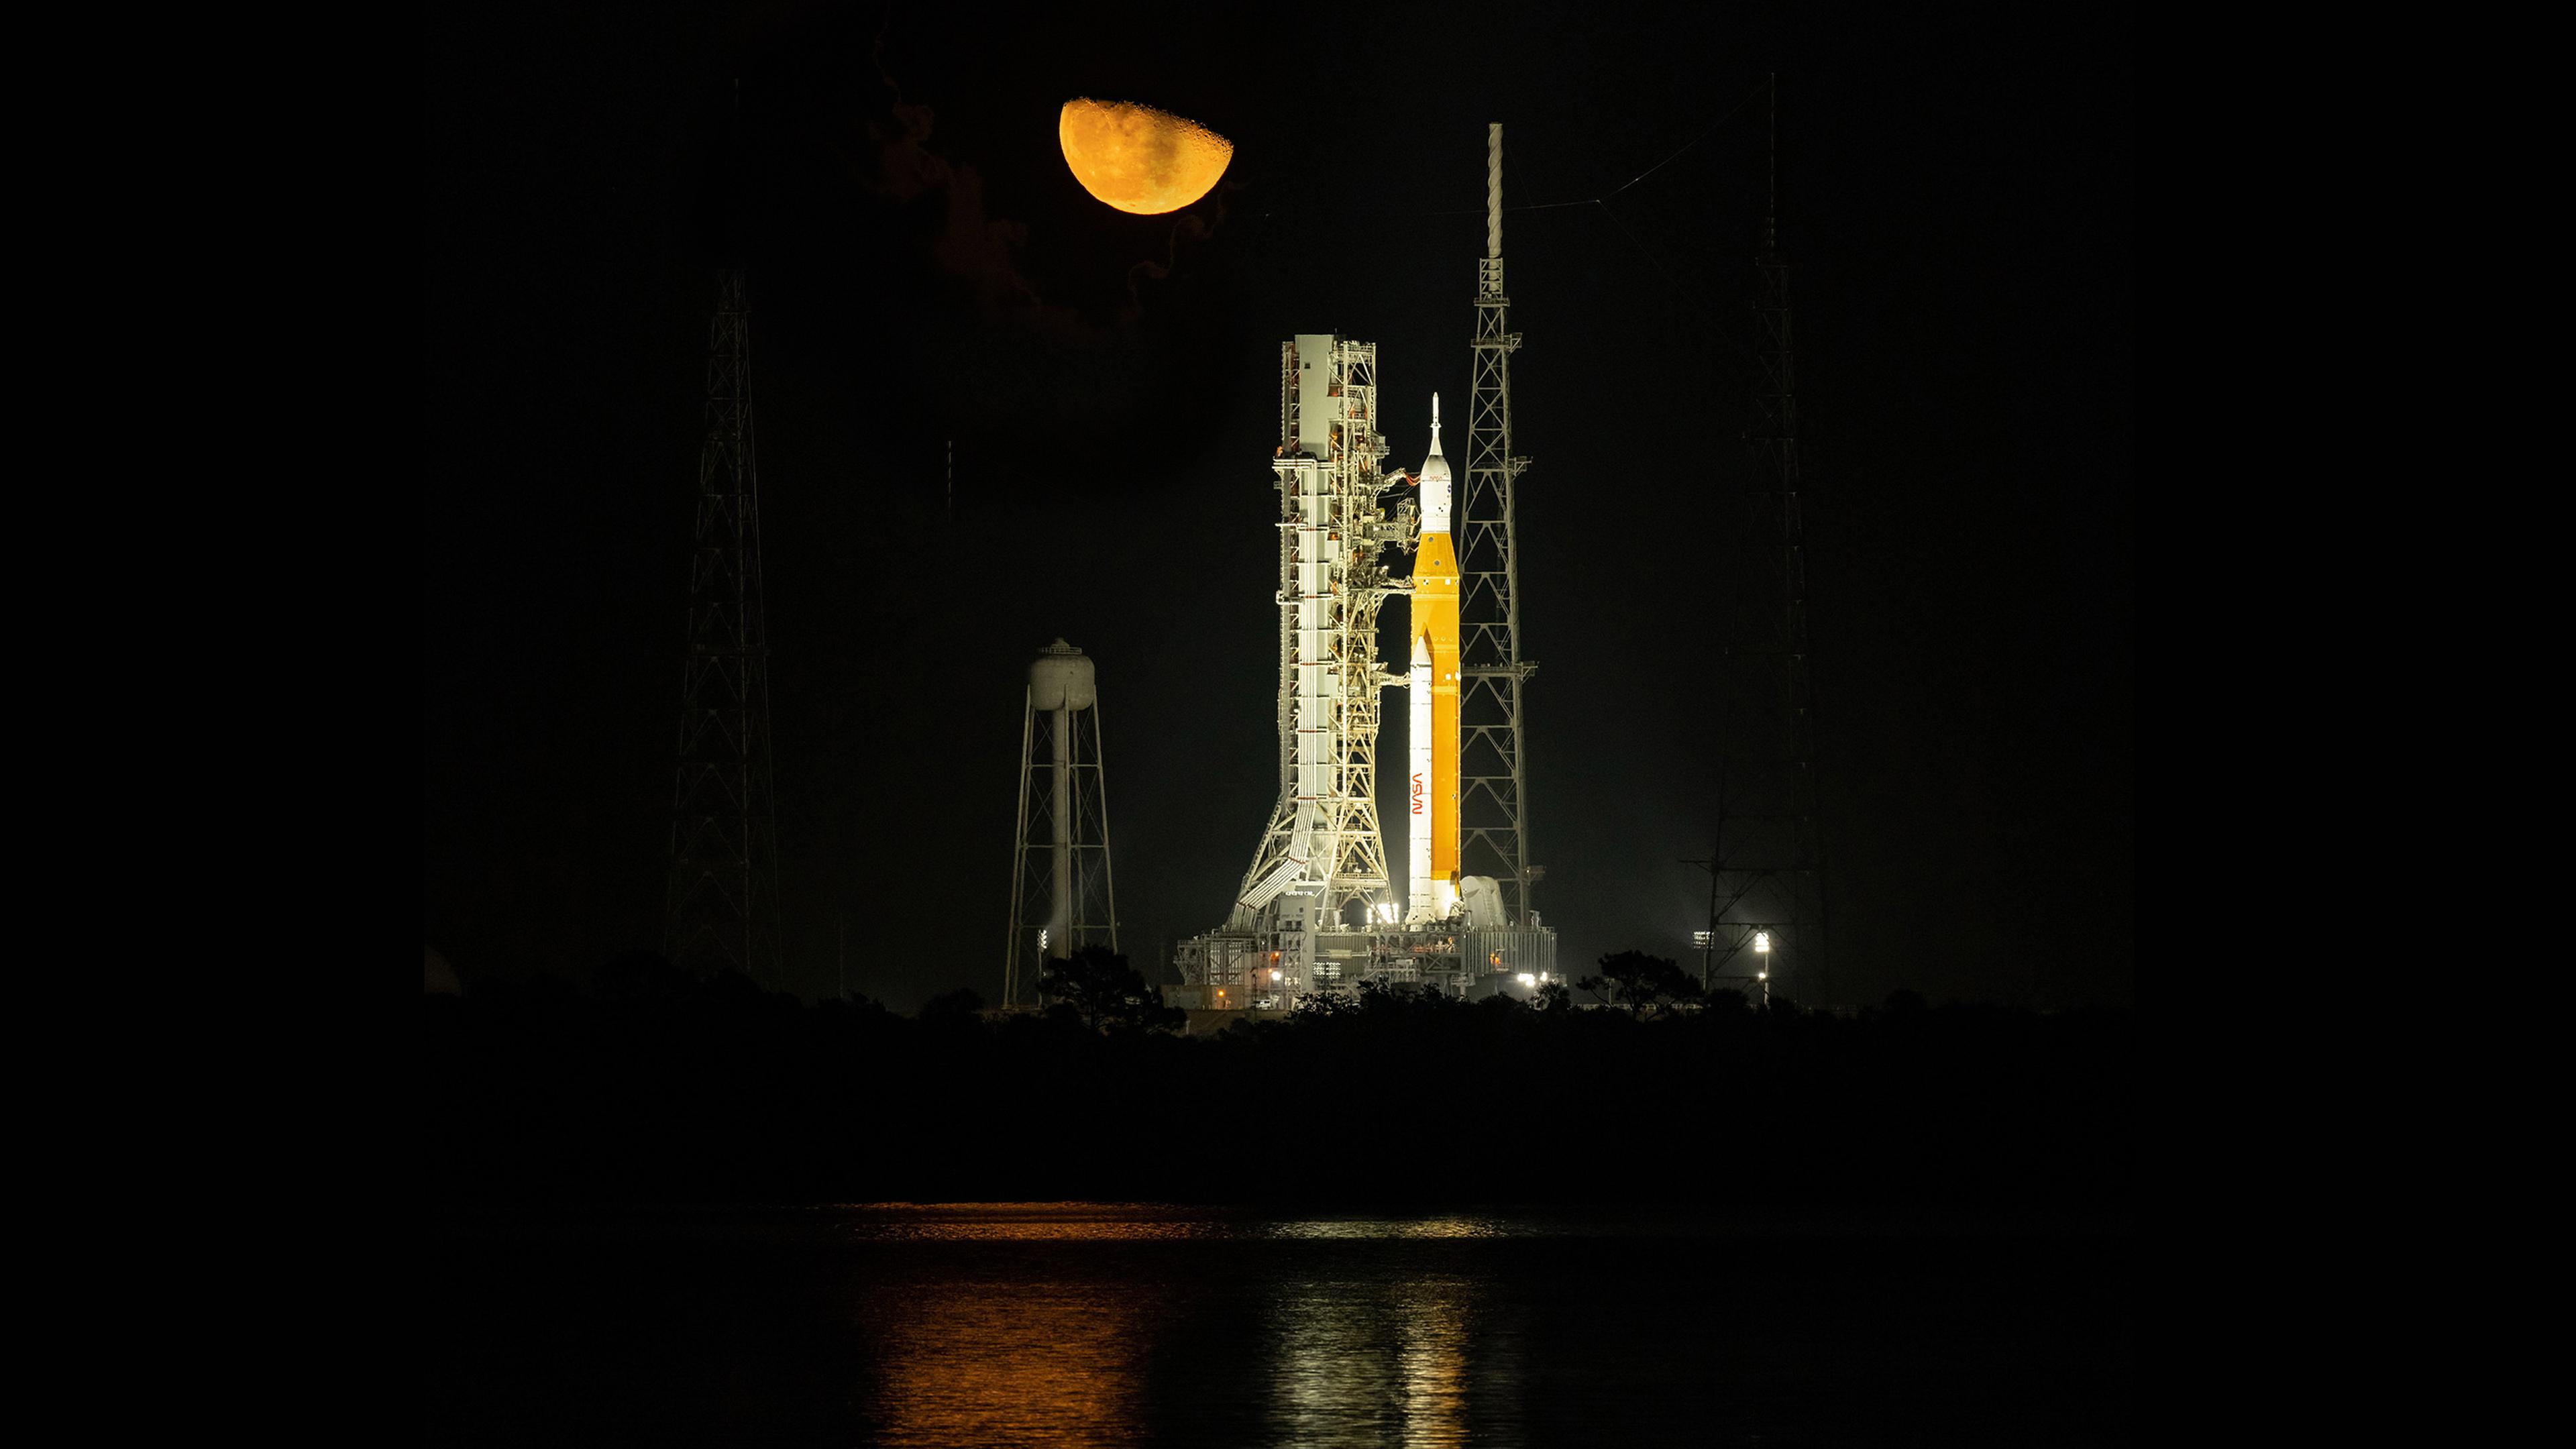 Nachtaufnahme der hell angestrahlten neuen Mondrakete SLS, die vor dem Start auf der Startrampe steht